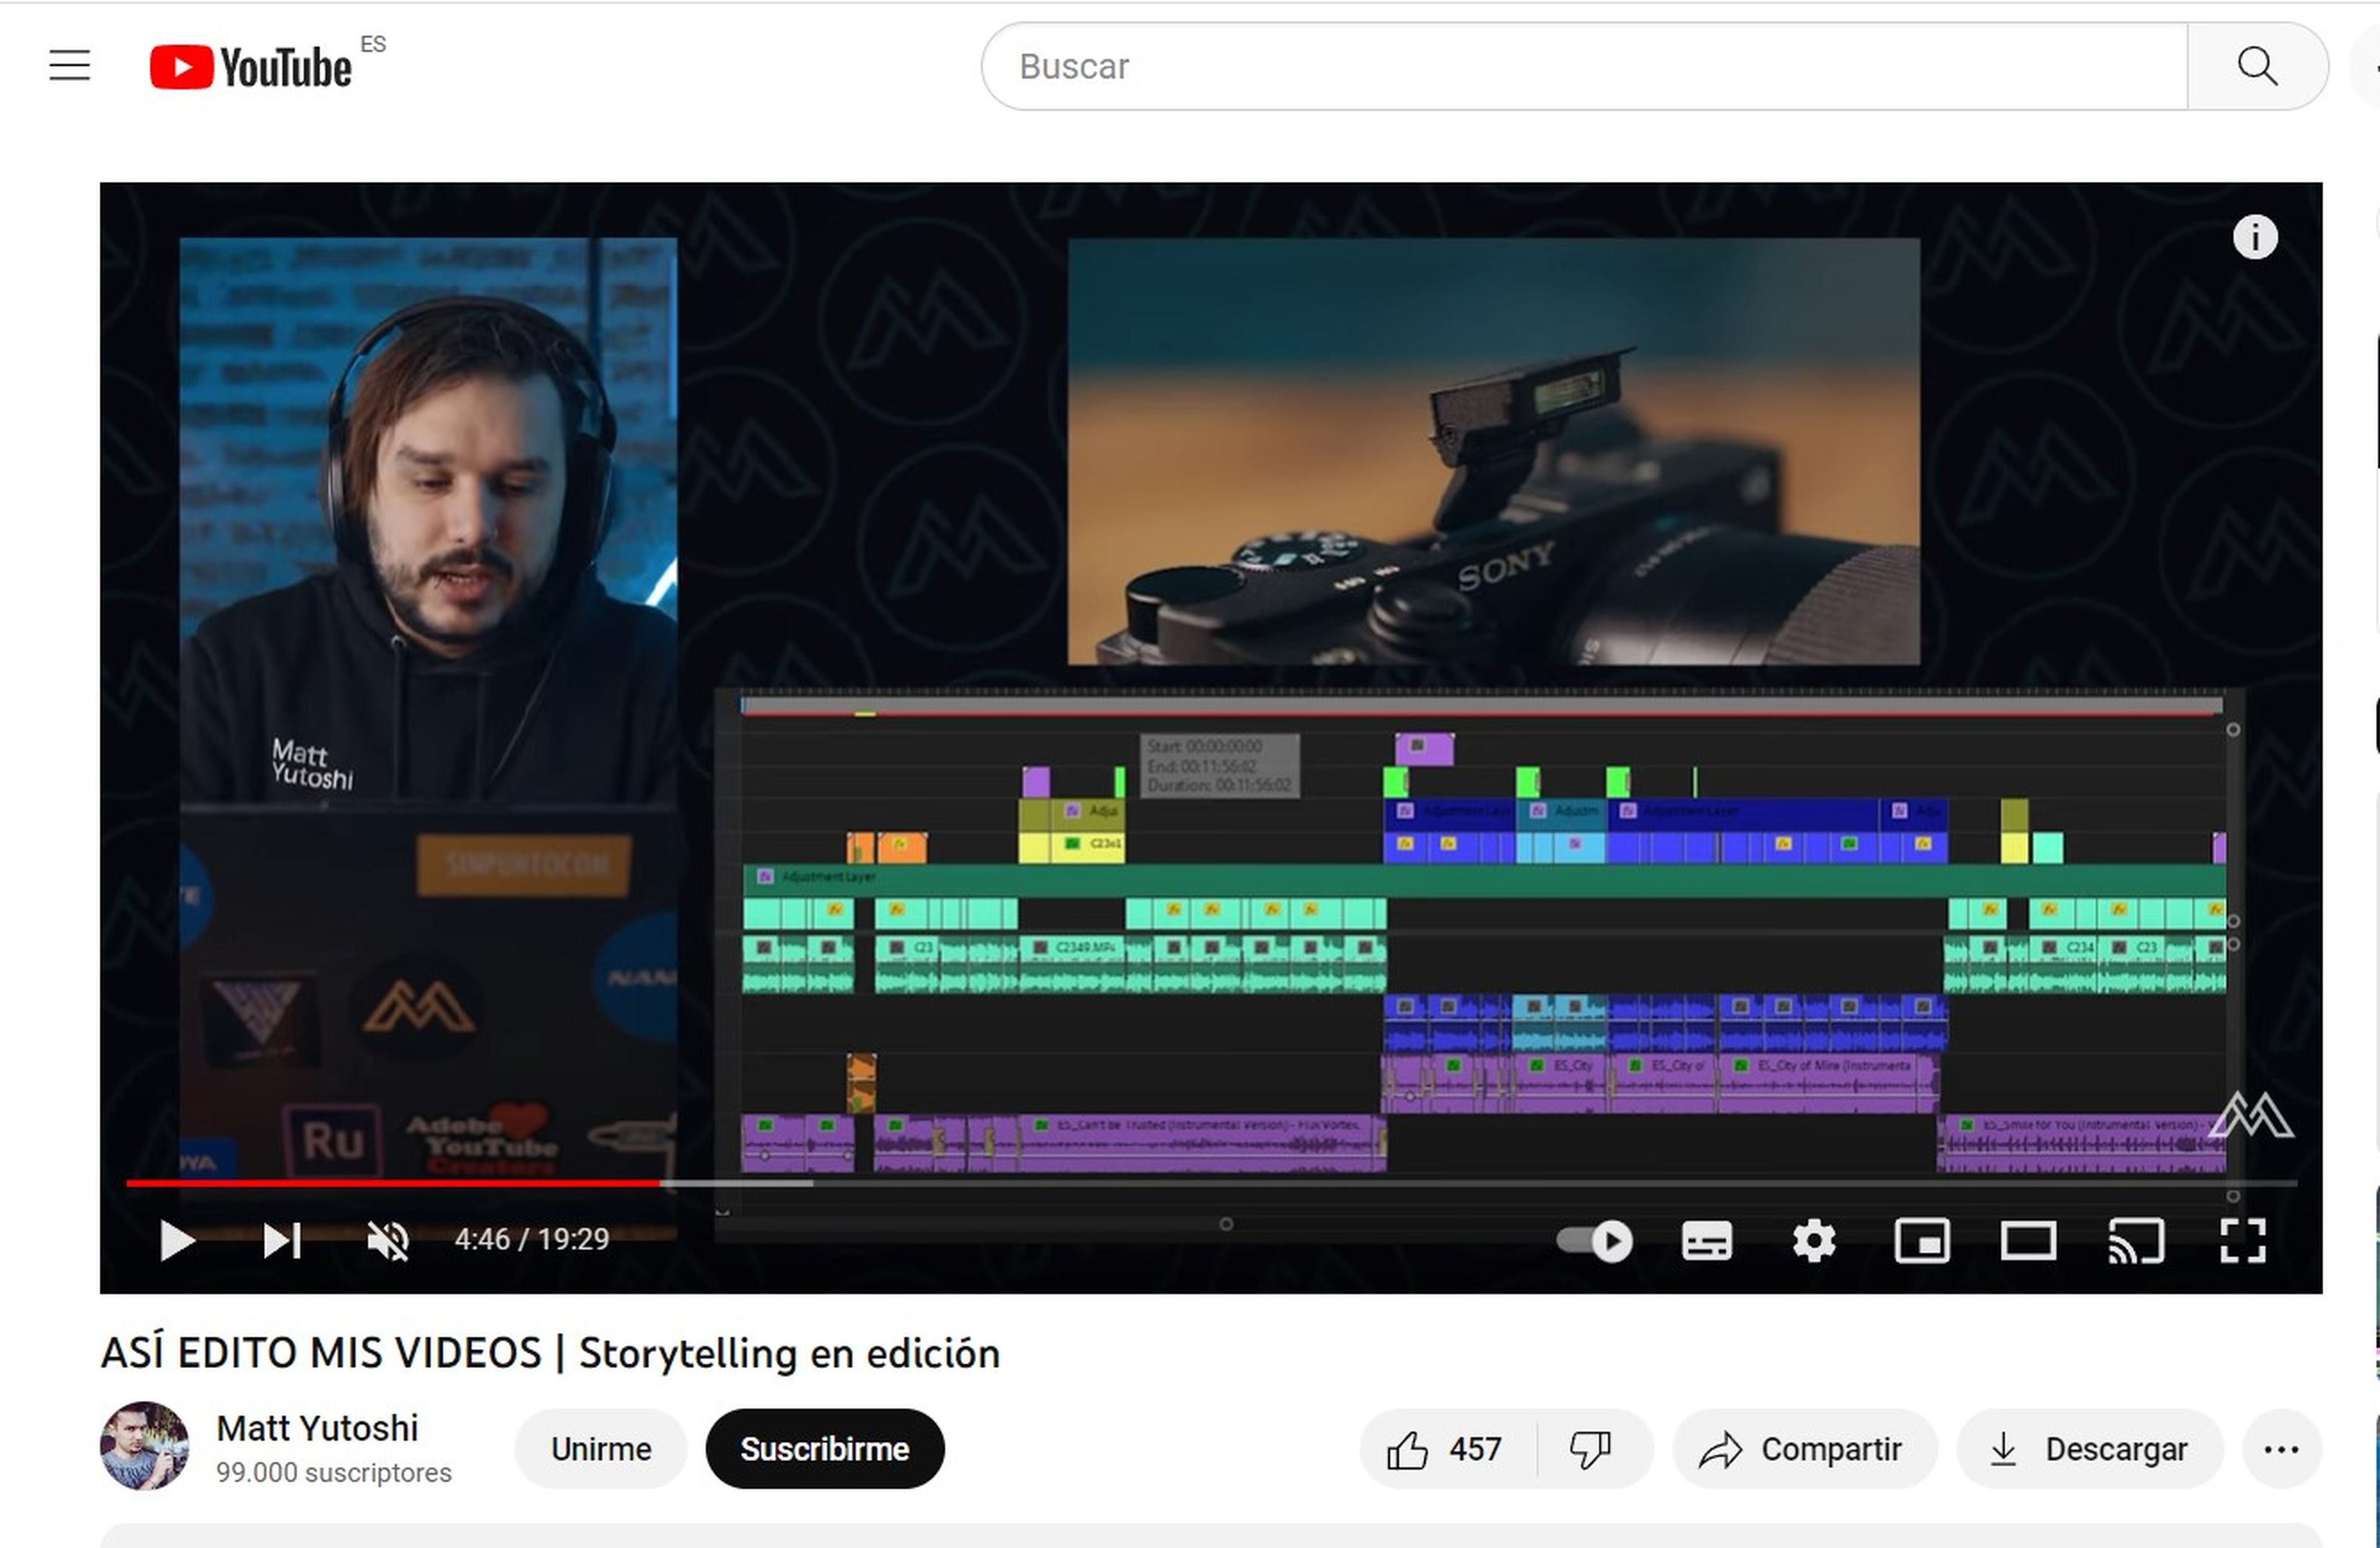 El creador Matt Yutoshi muestra cómo edita en uno de los vídeos de su canal.